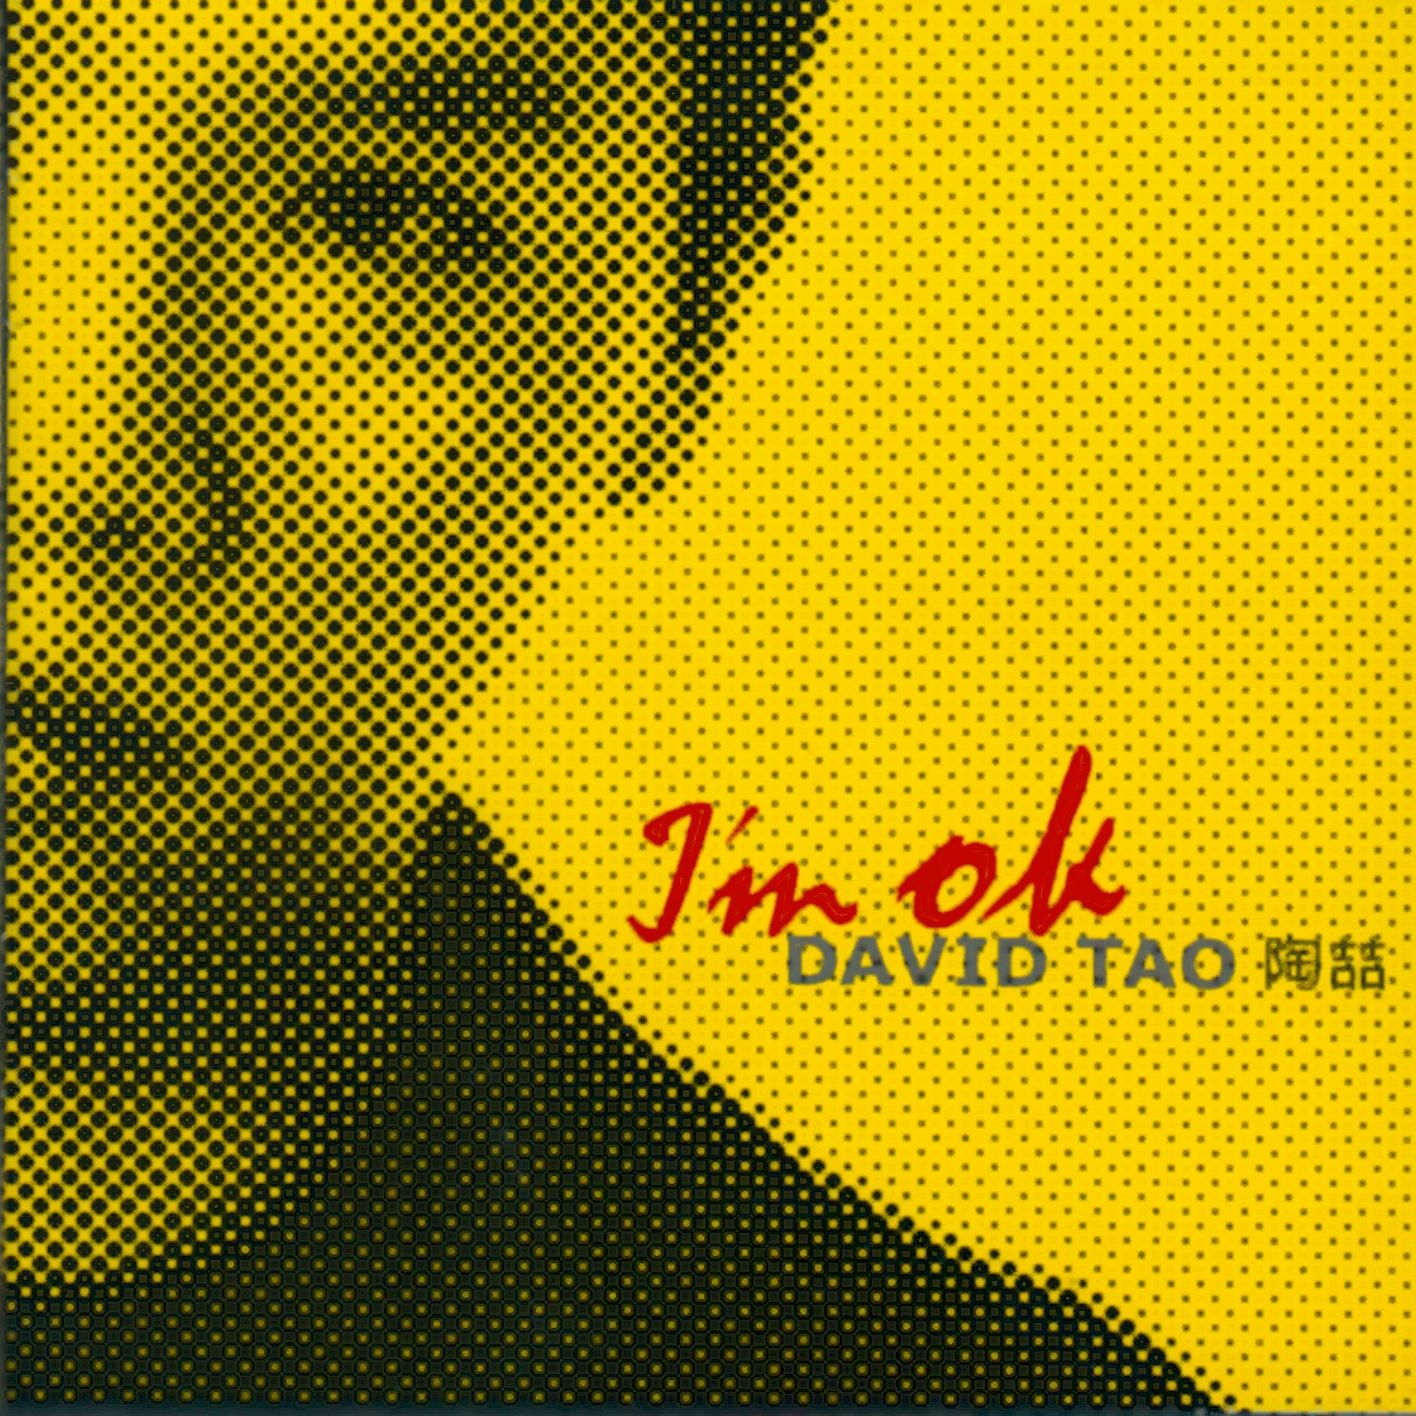 I'M O.K.